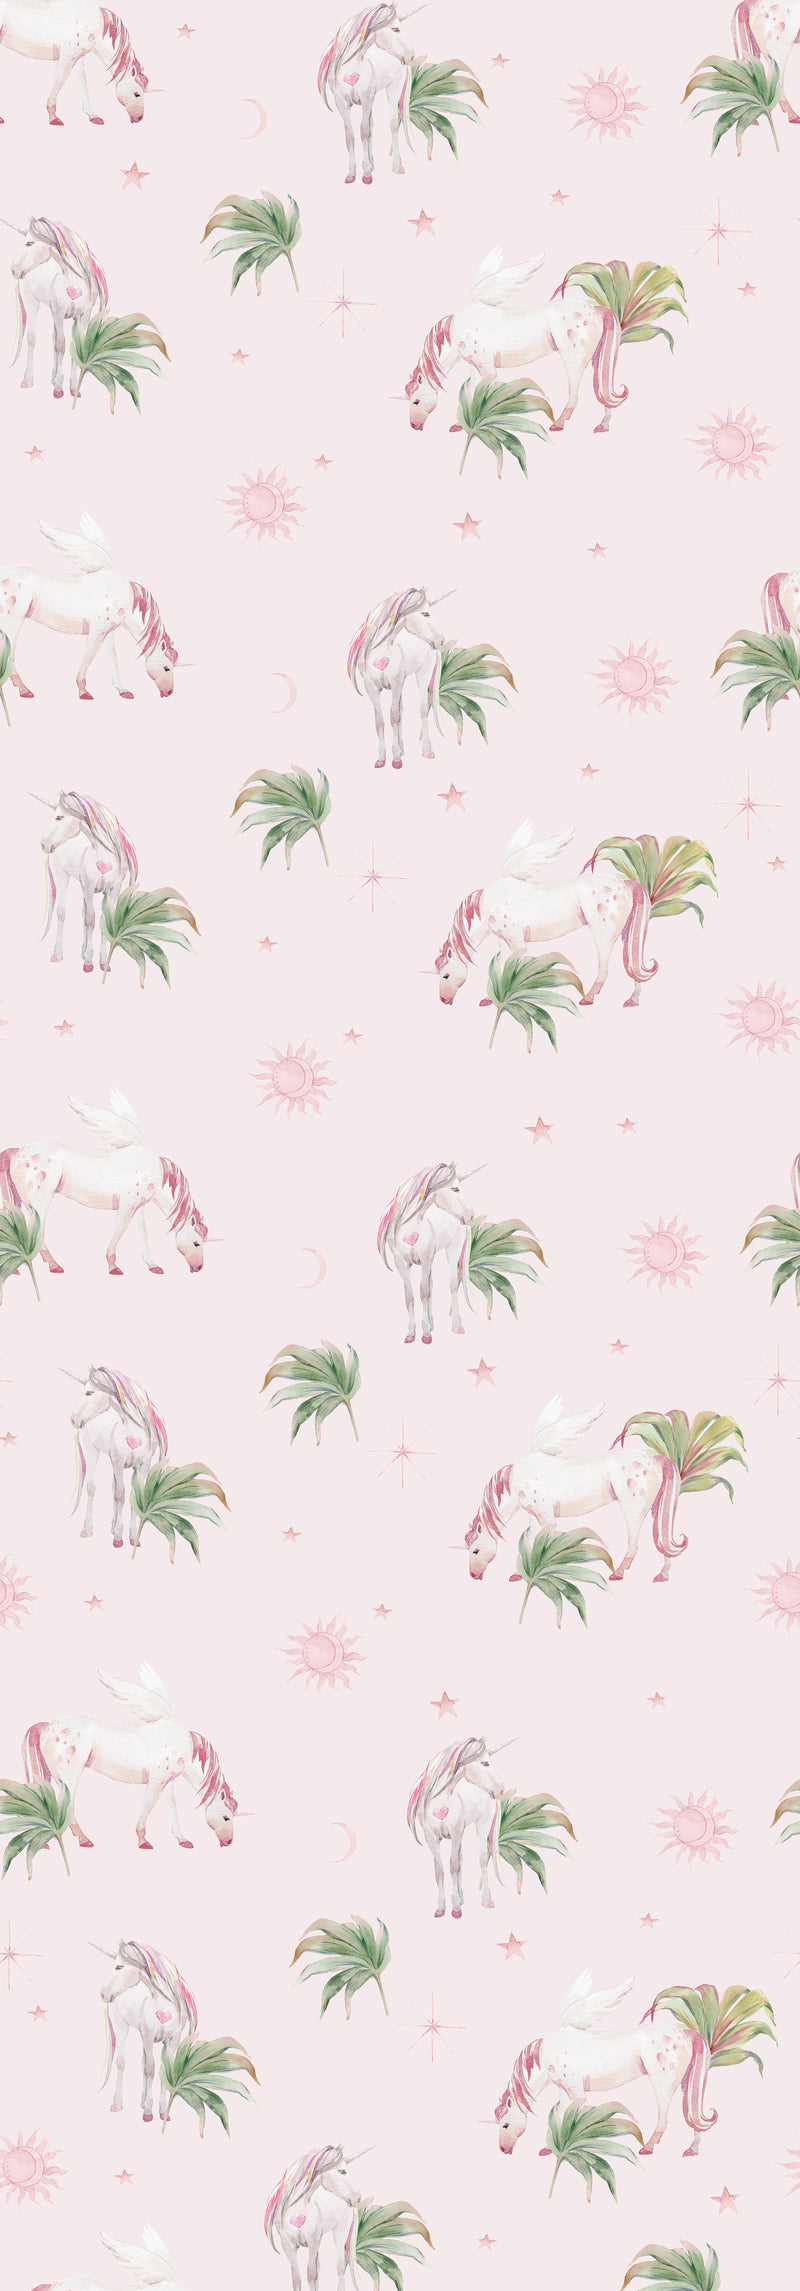 Creative Lab Amsterdam Fantasy Unicorn Wallpaper